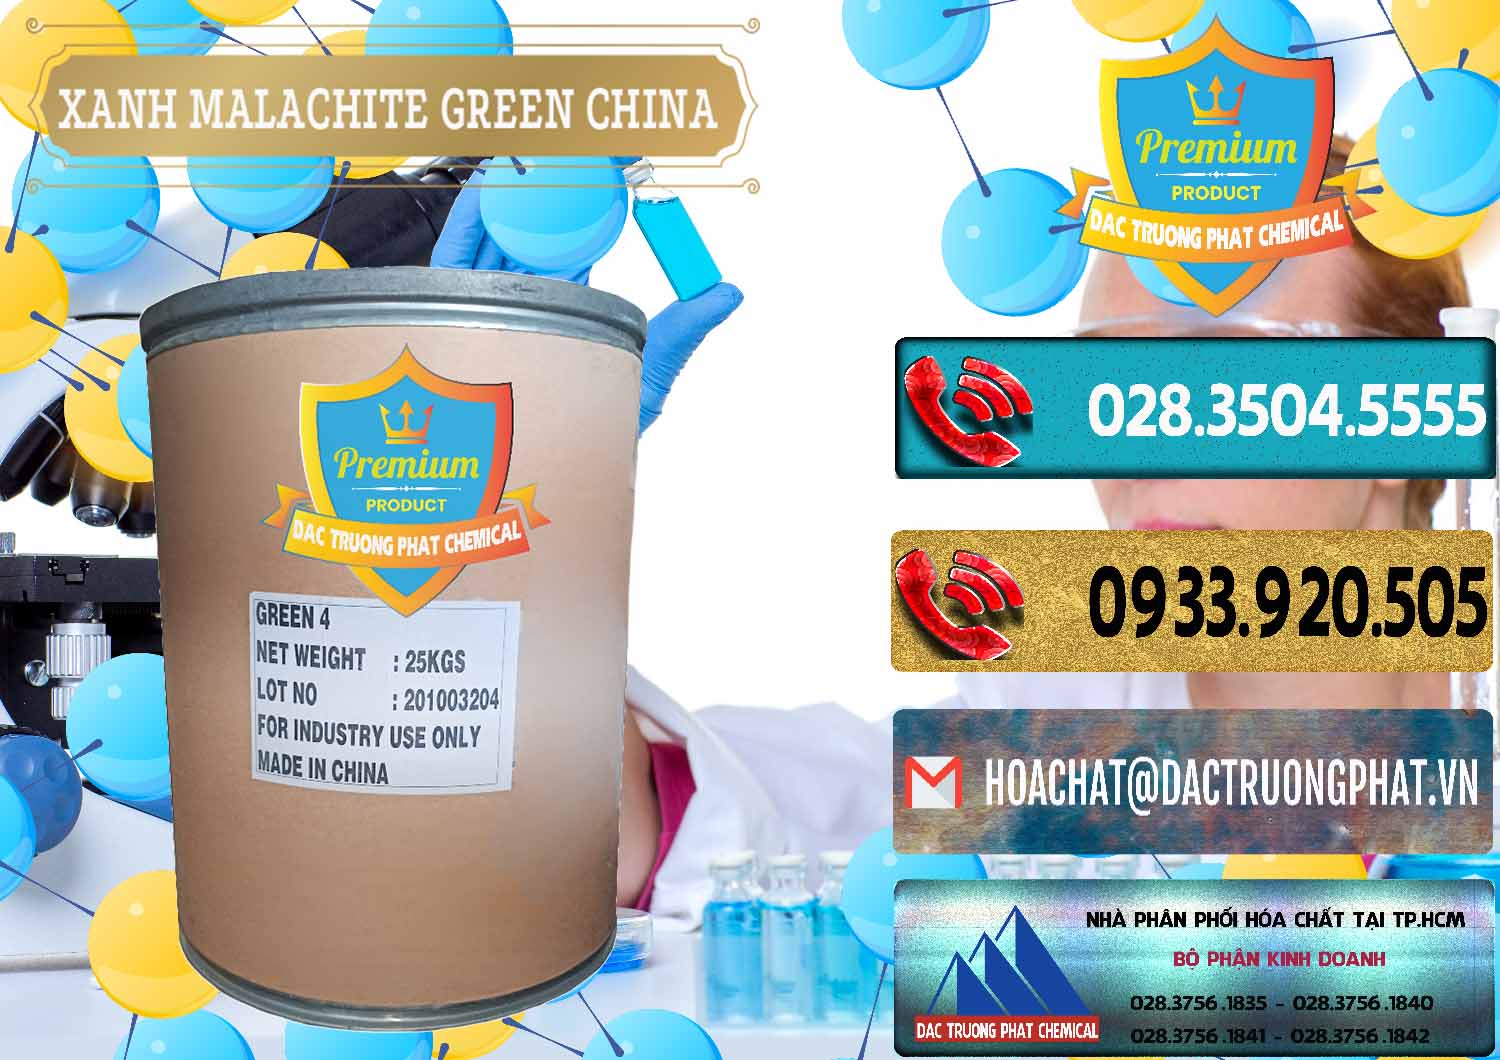 Cty chuyên phân phối _ bán Xanh Malachite Green Trung Quốc China - 0325 - Nơi cung cấp _ phân phối hóa chất tại TP.HCM - hoachatdetnhuom.com